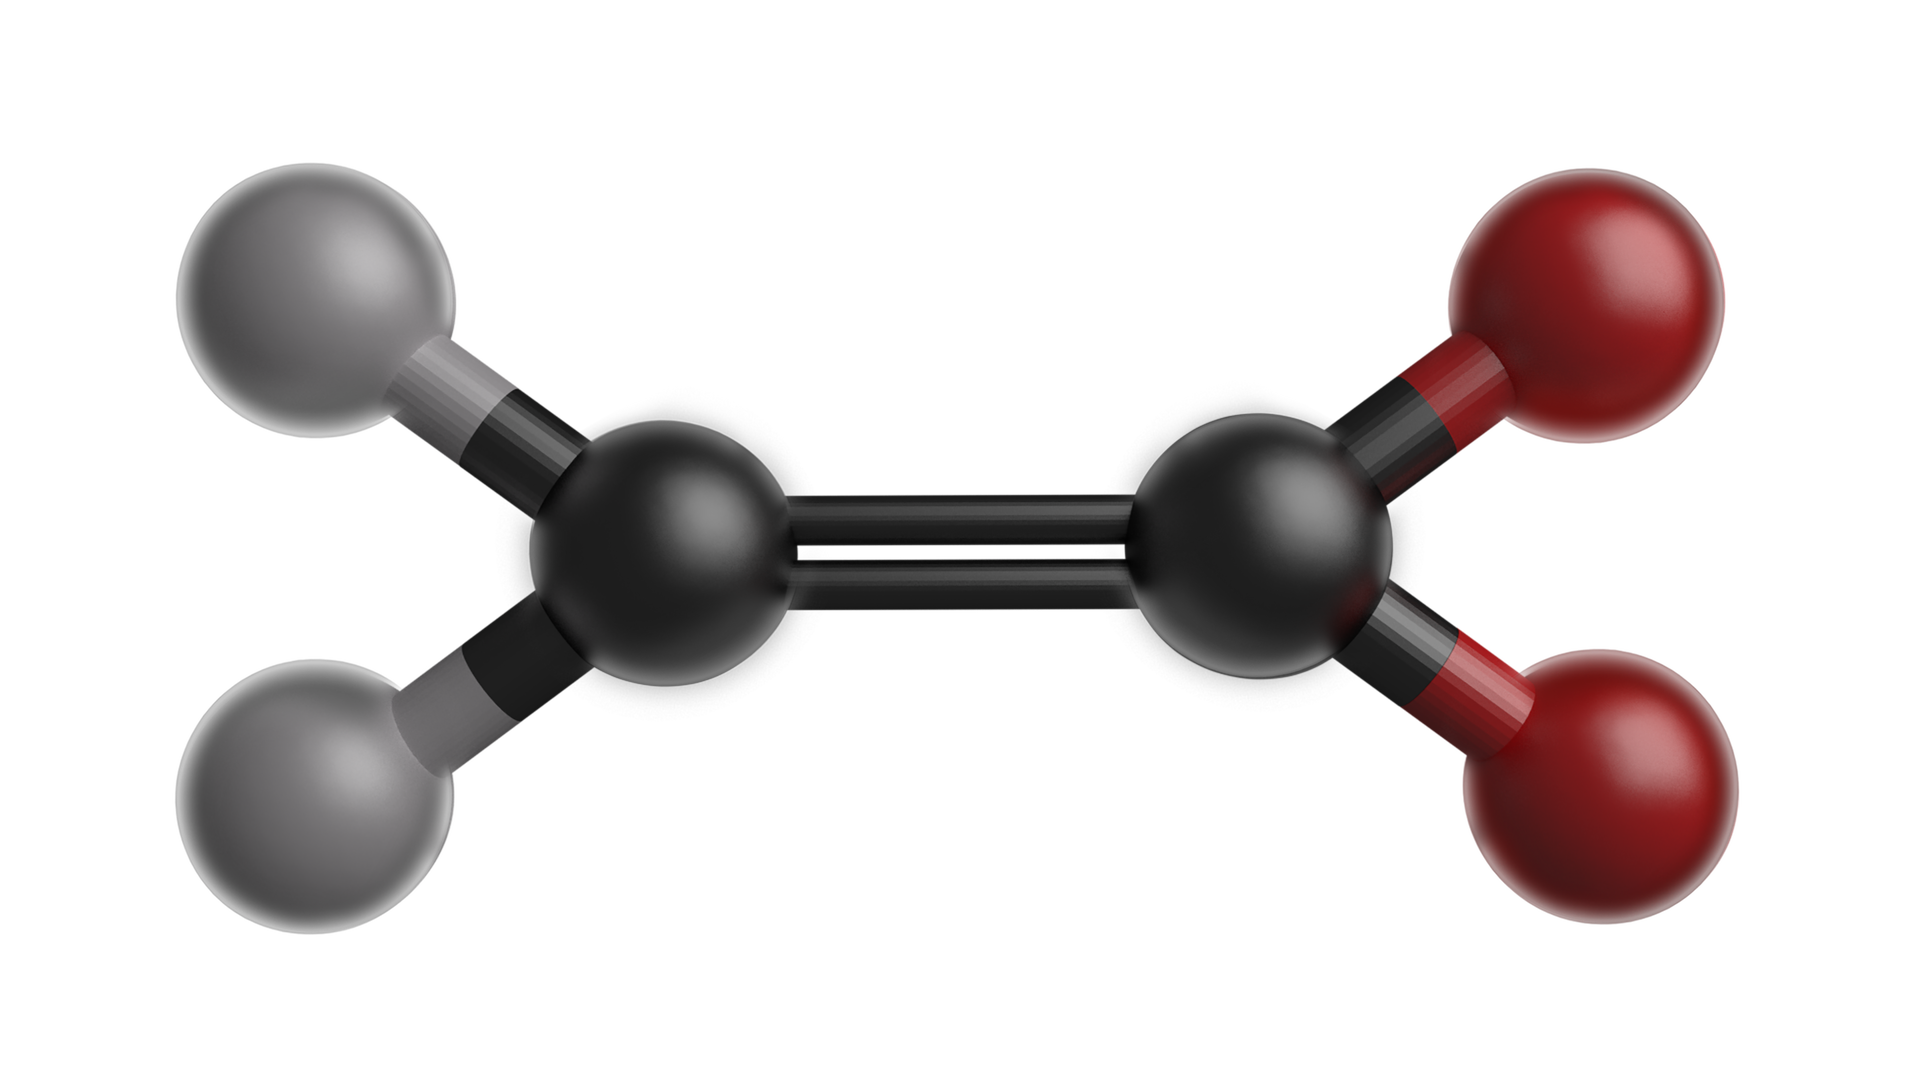 Na ilustracji jest model kulkowo‑pręcikowy. Dwie czarne kulki łączą się wiązaniem podwójnym. Kulka leżąca po lewej stronie łączy się po lewej stronie z dwiema szarymi kulkami. Czarna kulka leżąca po prawej stronie łączy się z dwiema czerwonymi kulkami. Położenie kulek jest symetryczne. 